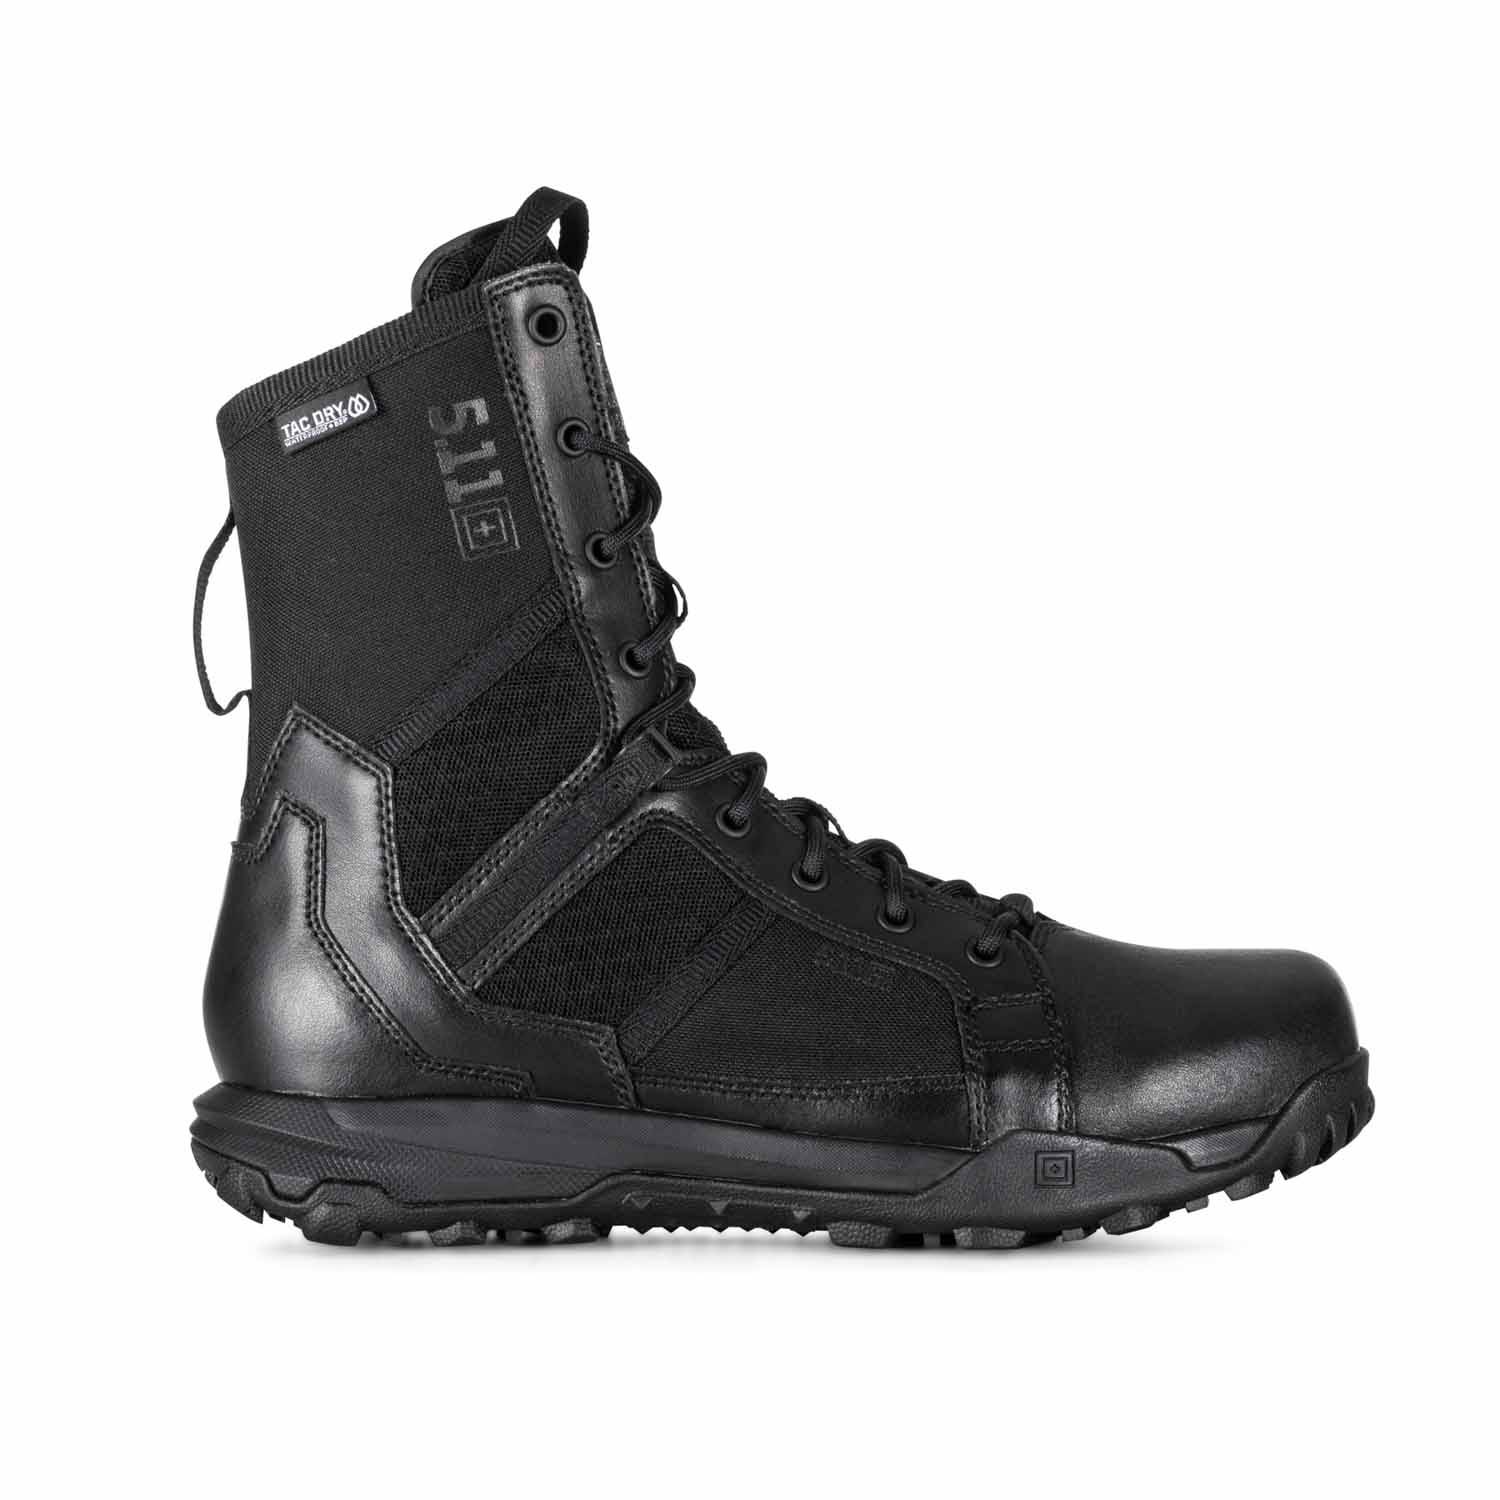 5.11 A/T 8" Side Zip Waterproof Boots